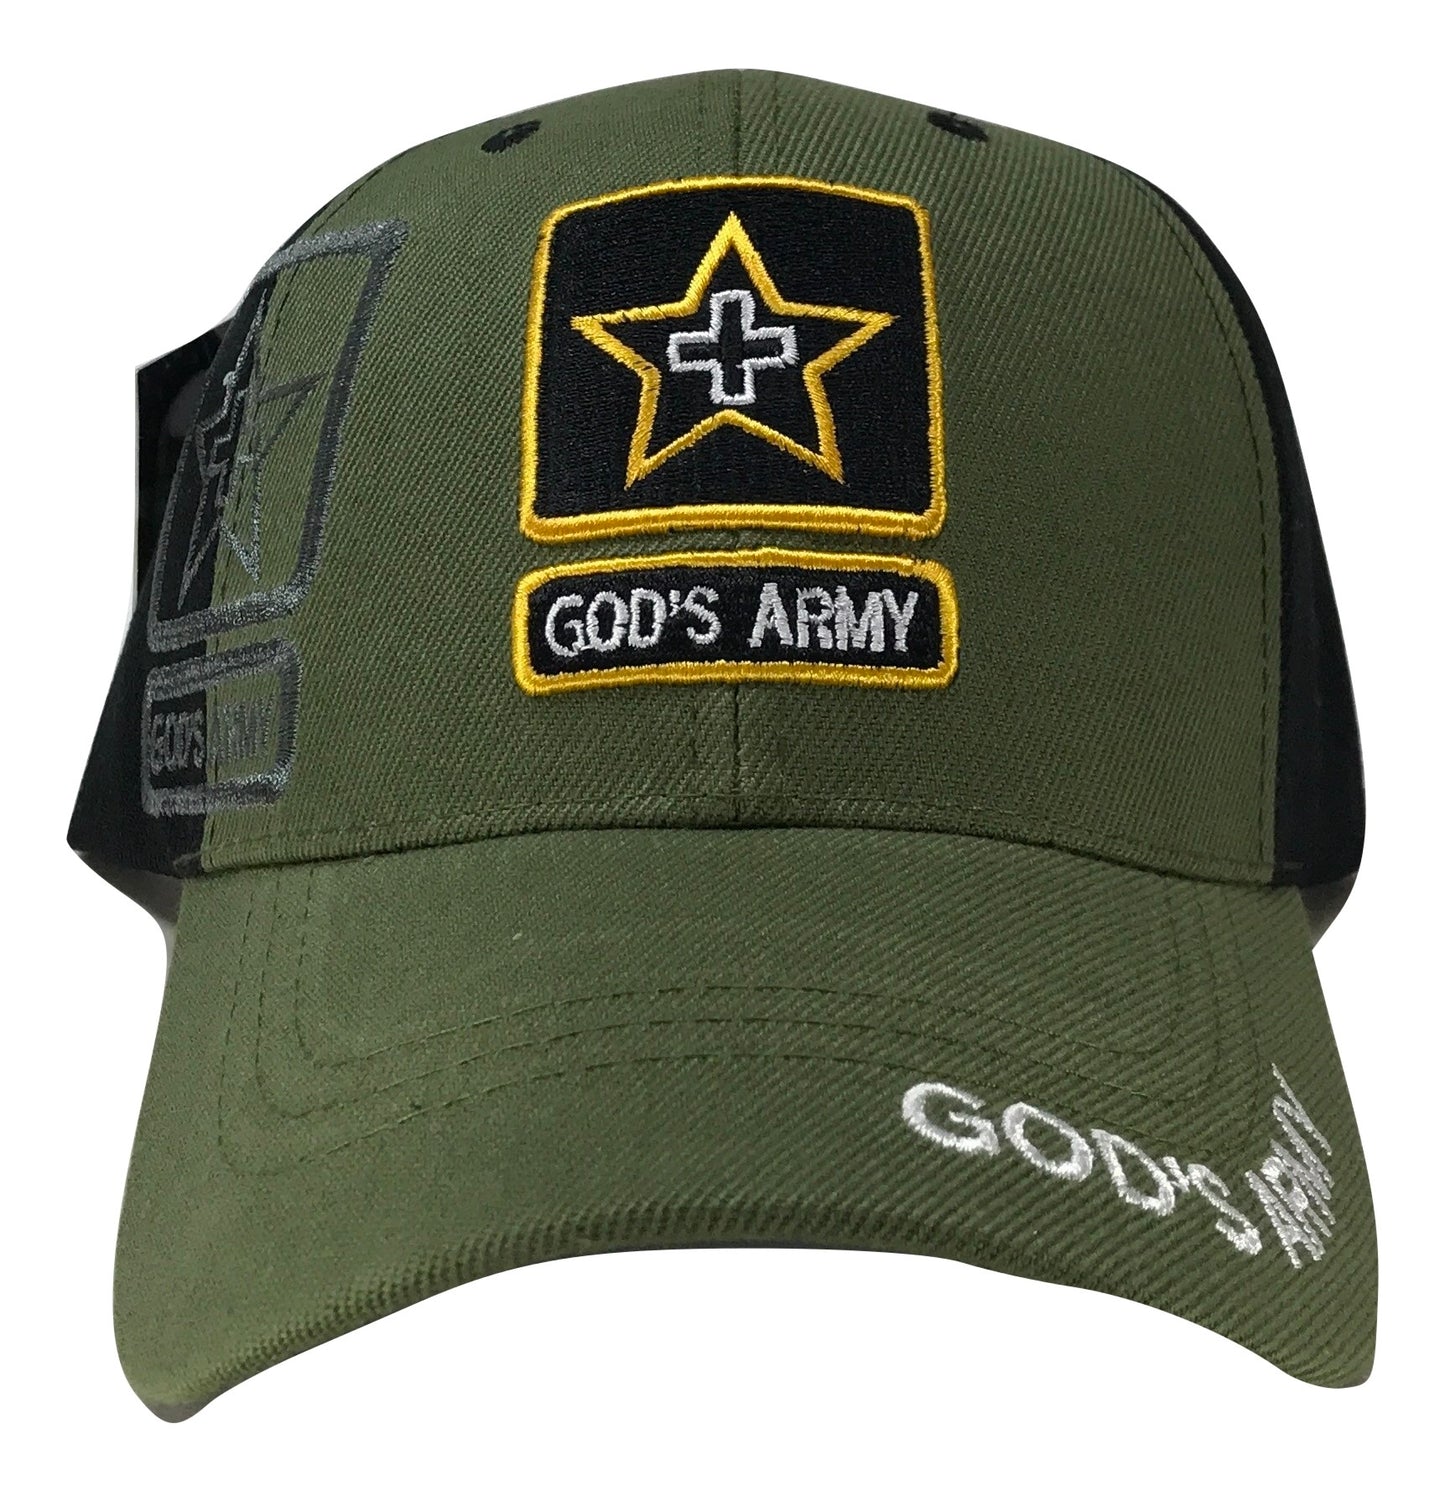 "God's Army"